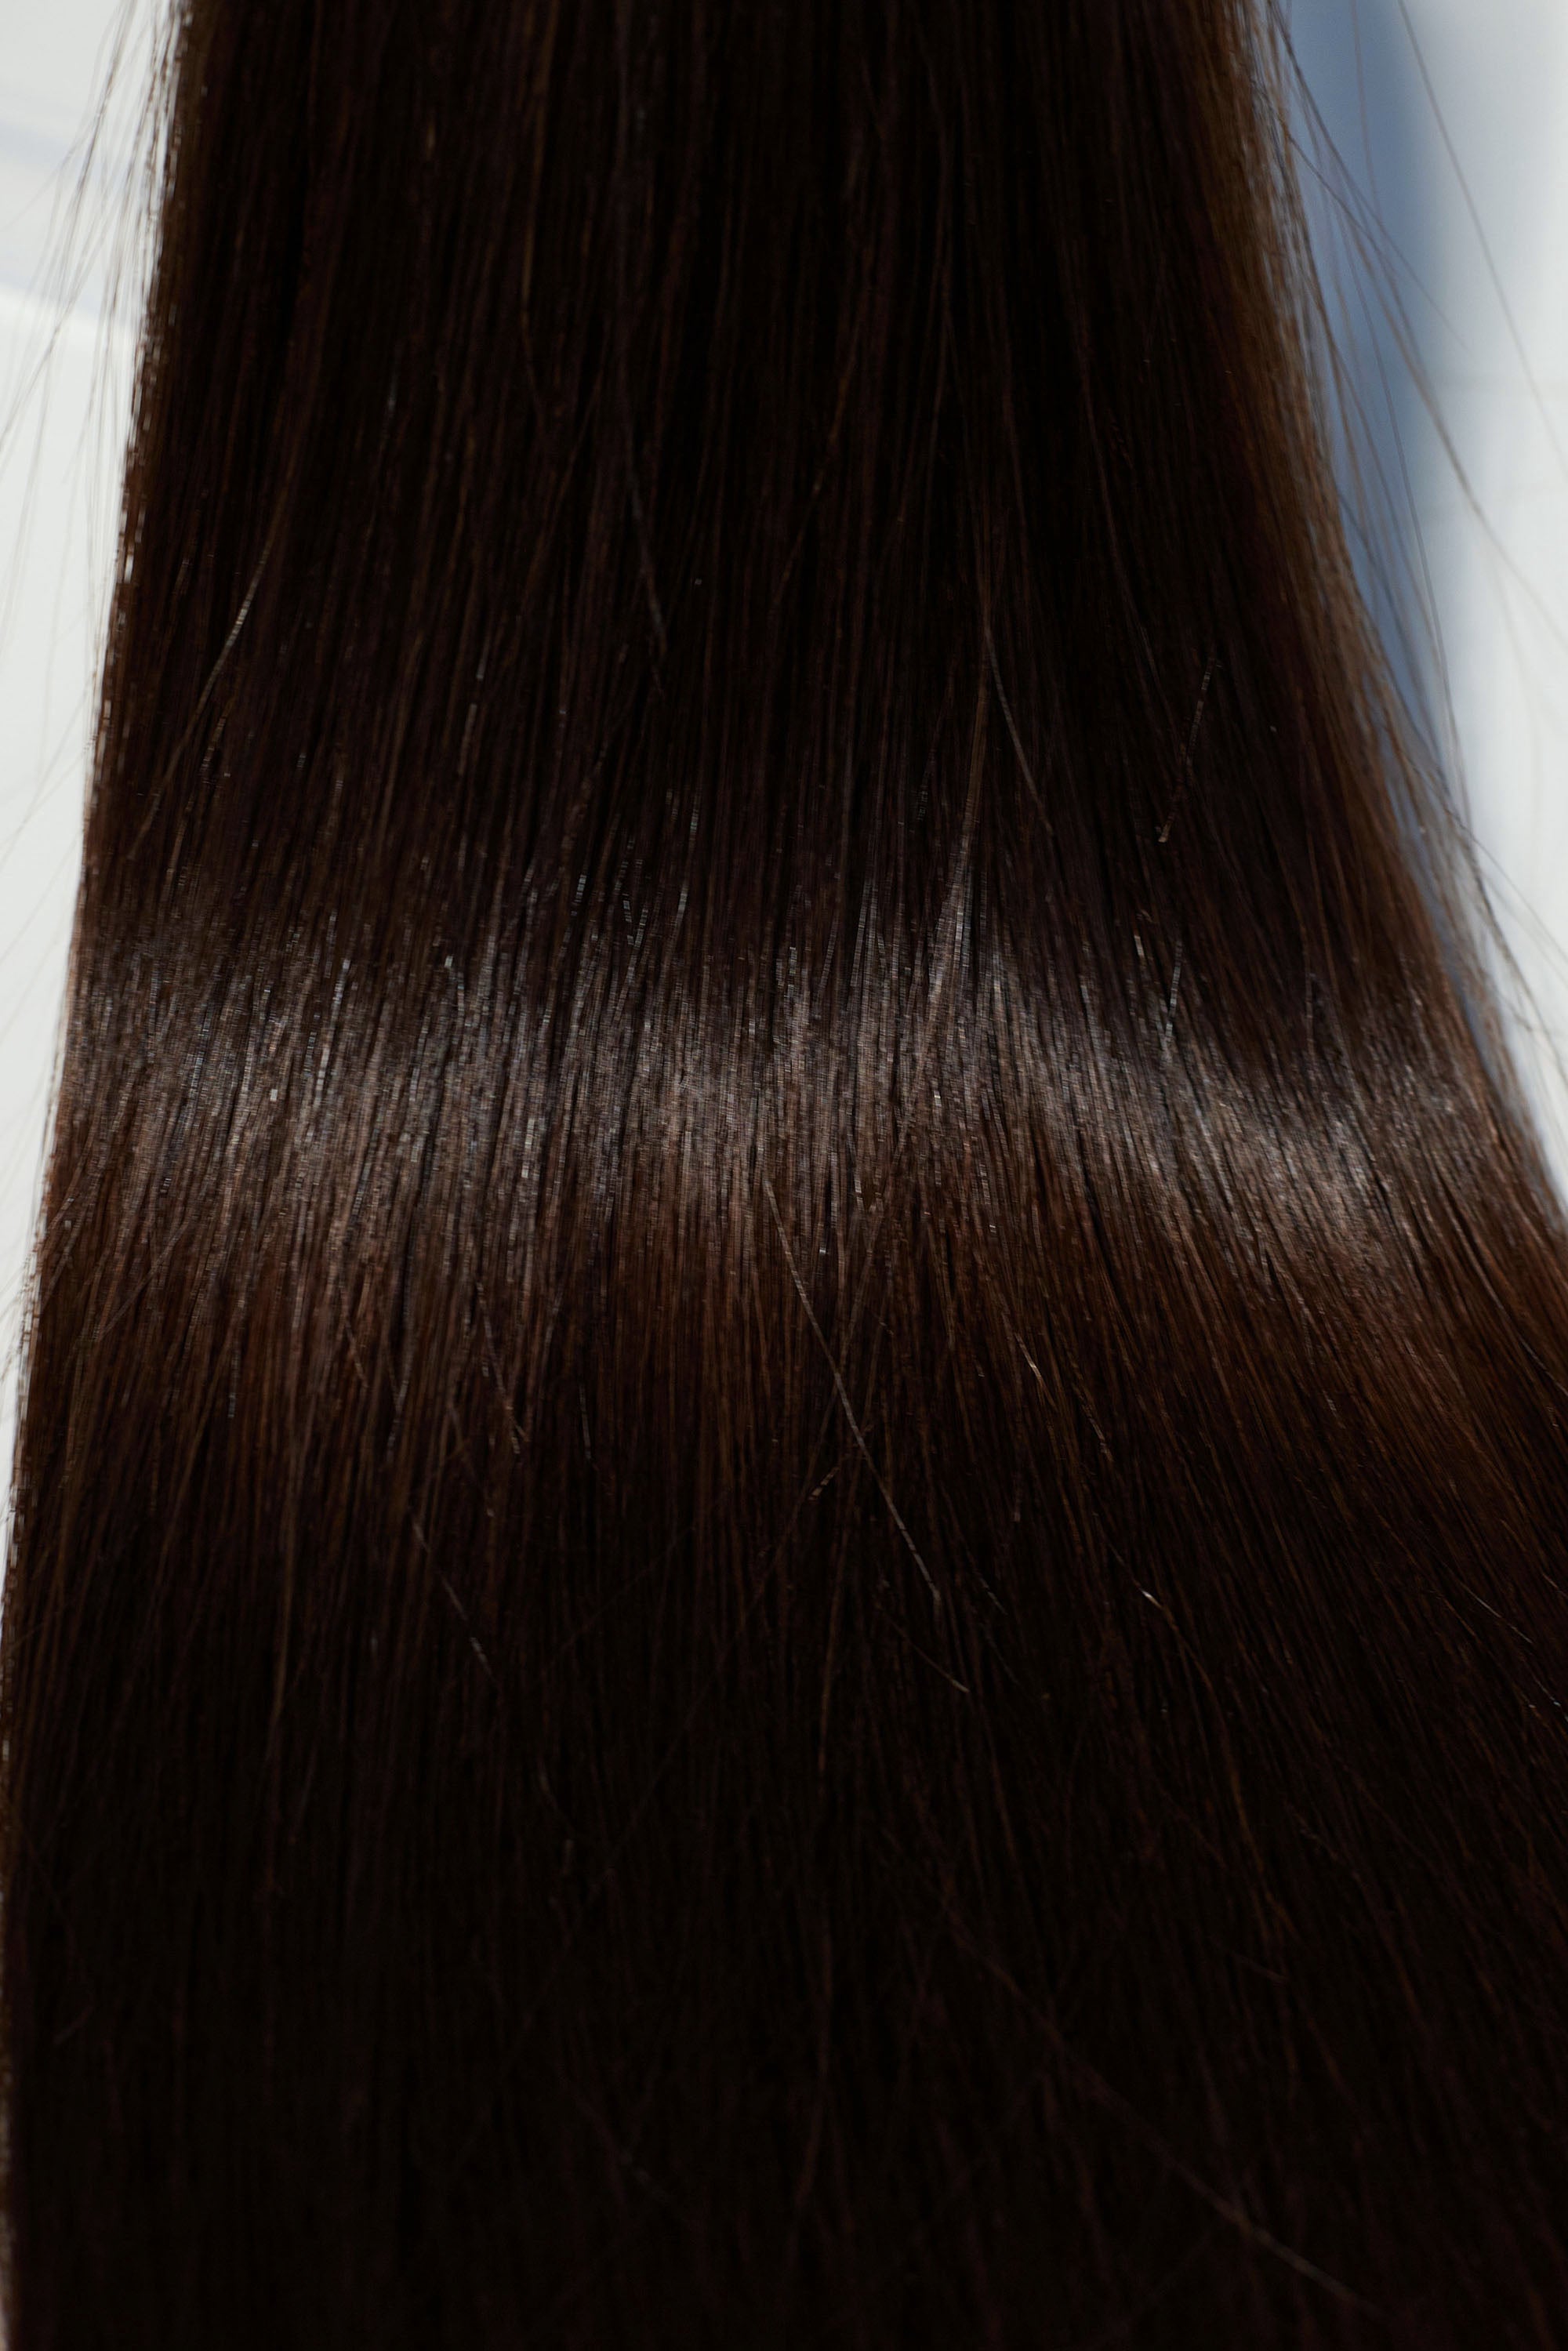 Behair professional Keratin Tip "Premium" 16" (40cm) Natural Straight Dark Coffee Brown #2 - 25g (1g each pcs) hair extensions